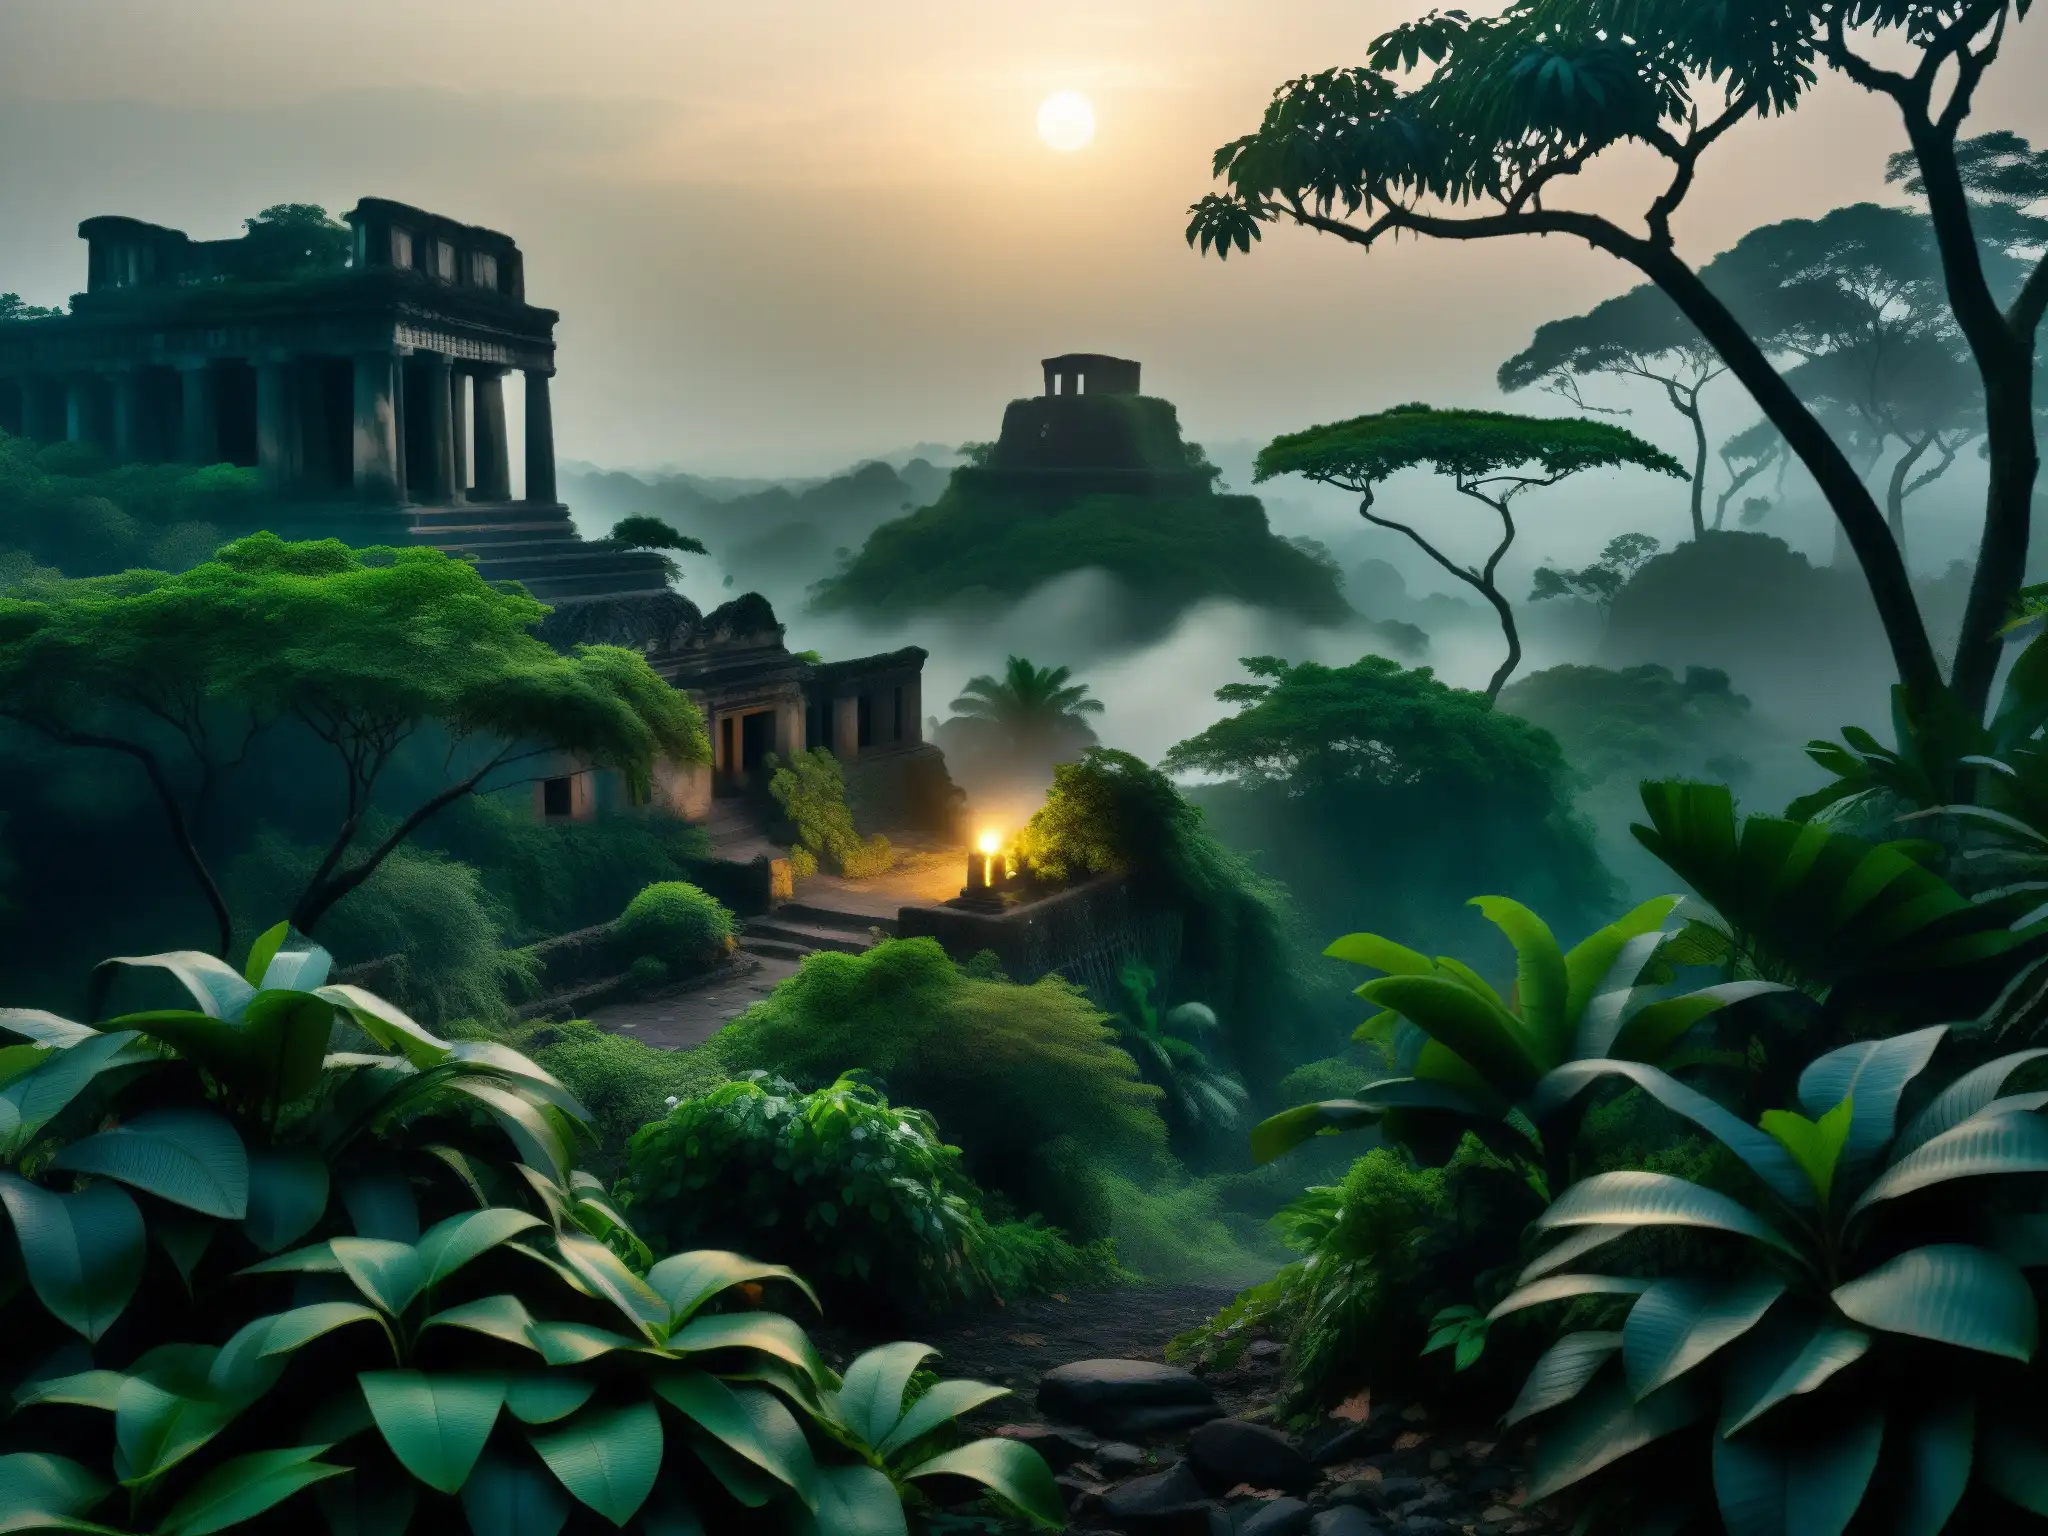 Imagen detallada de una selva neblinosa con ruinas antiguas y una majestuosa cobra